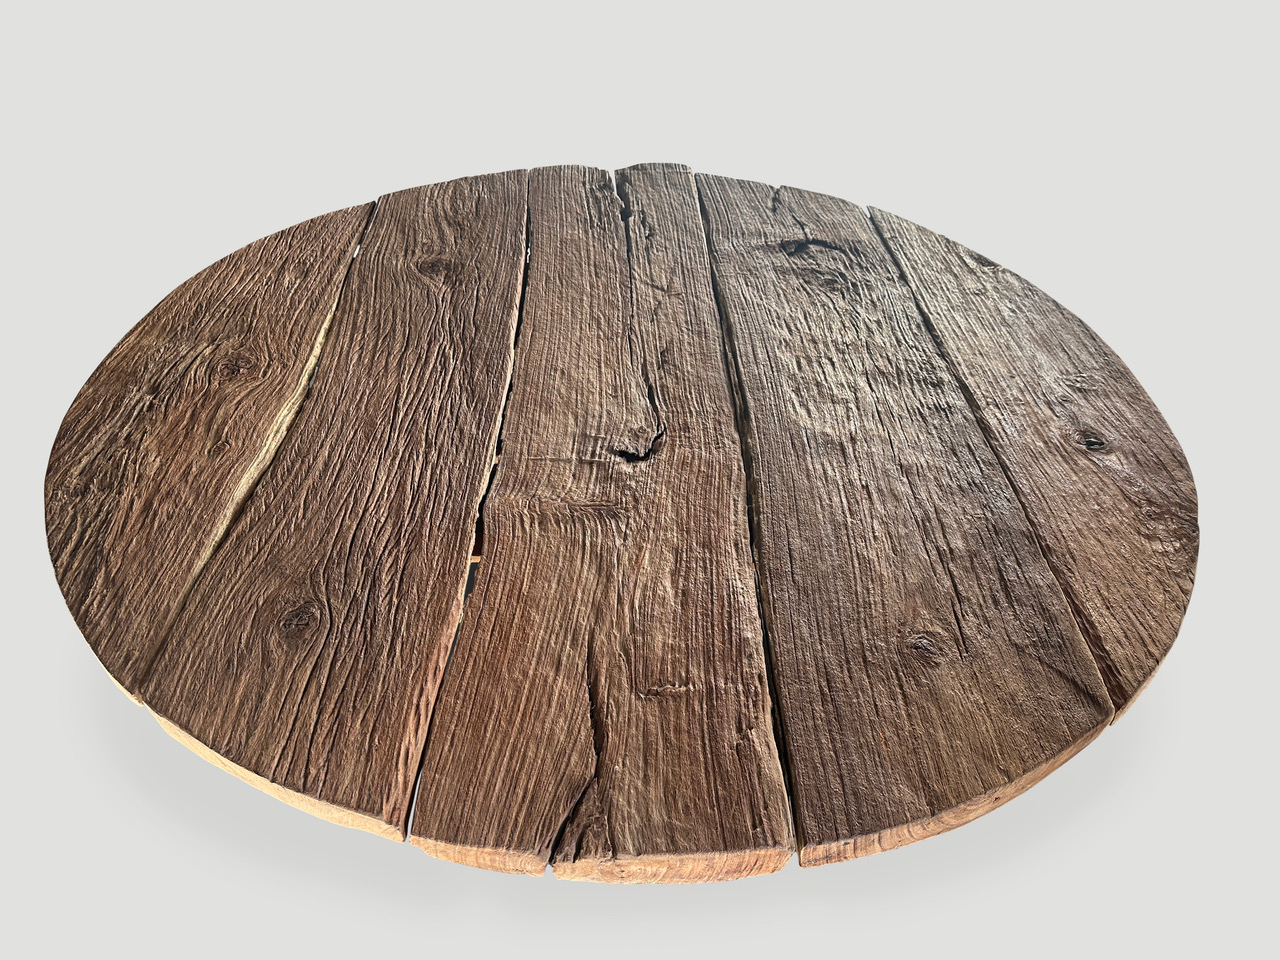 impressive round teak wood table